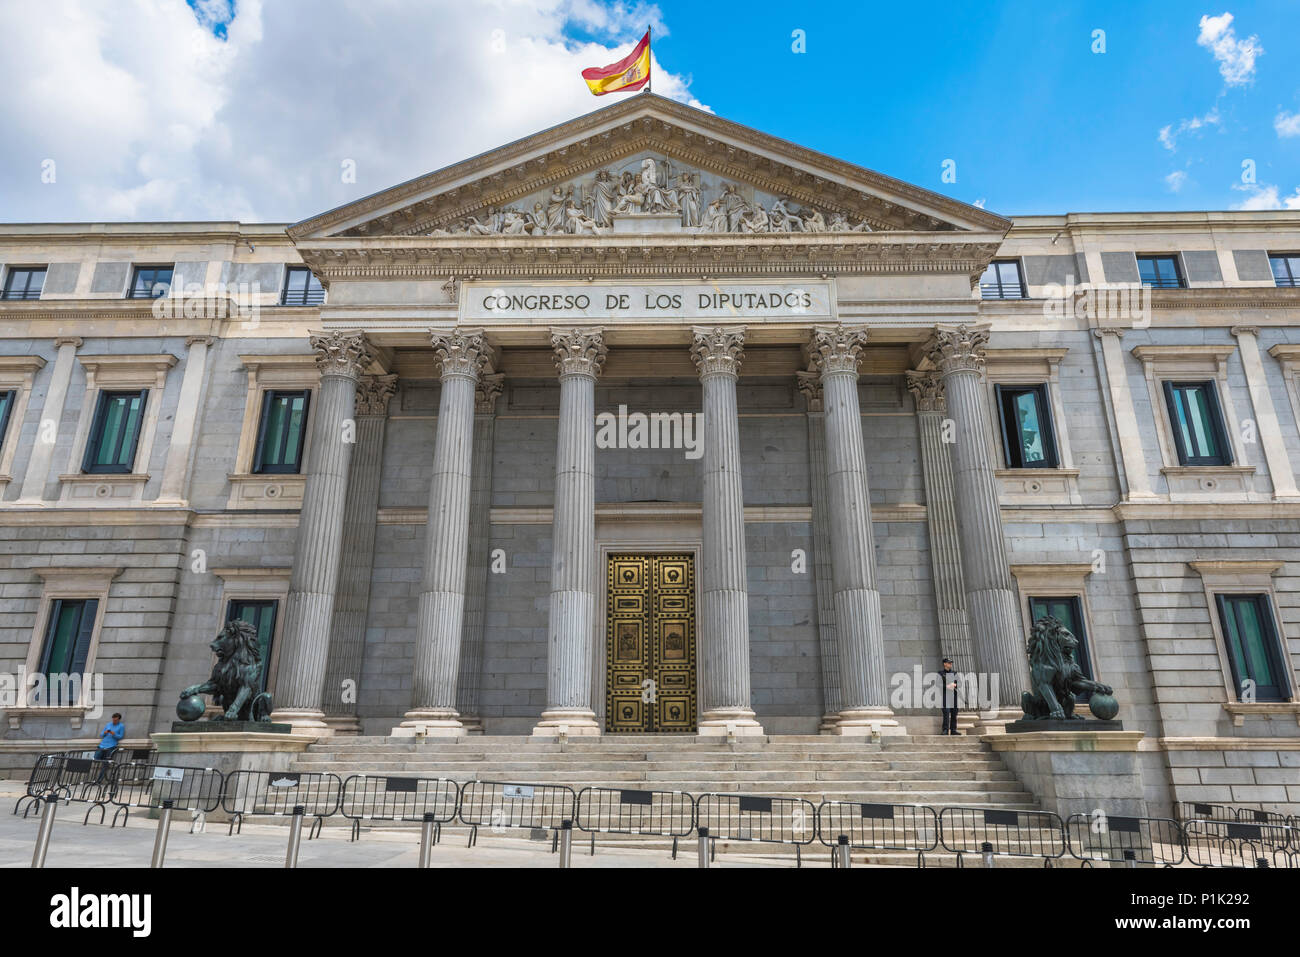 Espagne parlement, vue sur le Congreso de los Diputados - le bâtiment du parlement espagnol - dans le centre de Madrid, Espagne. Banque D'Images